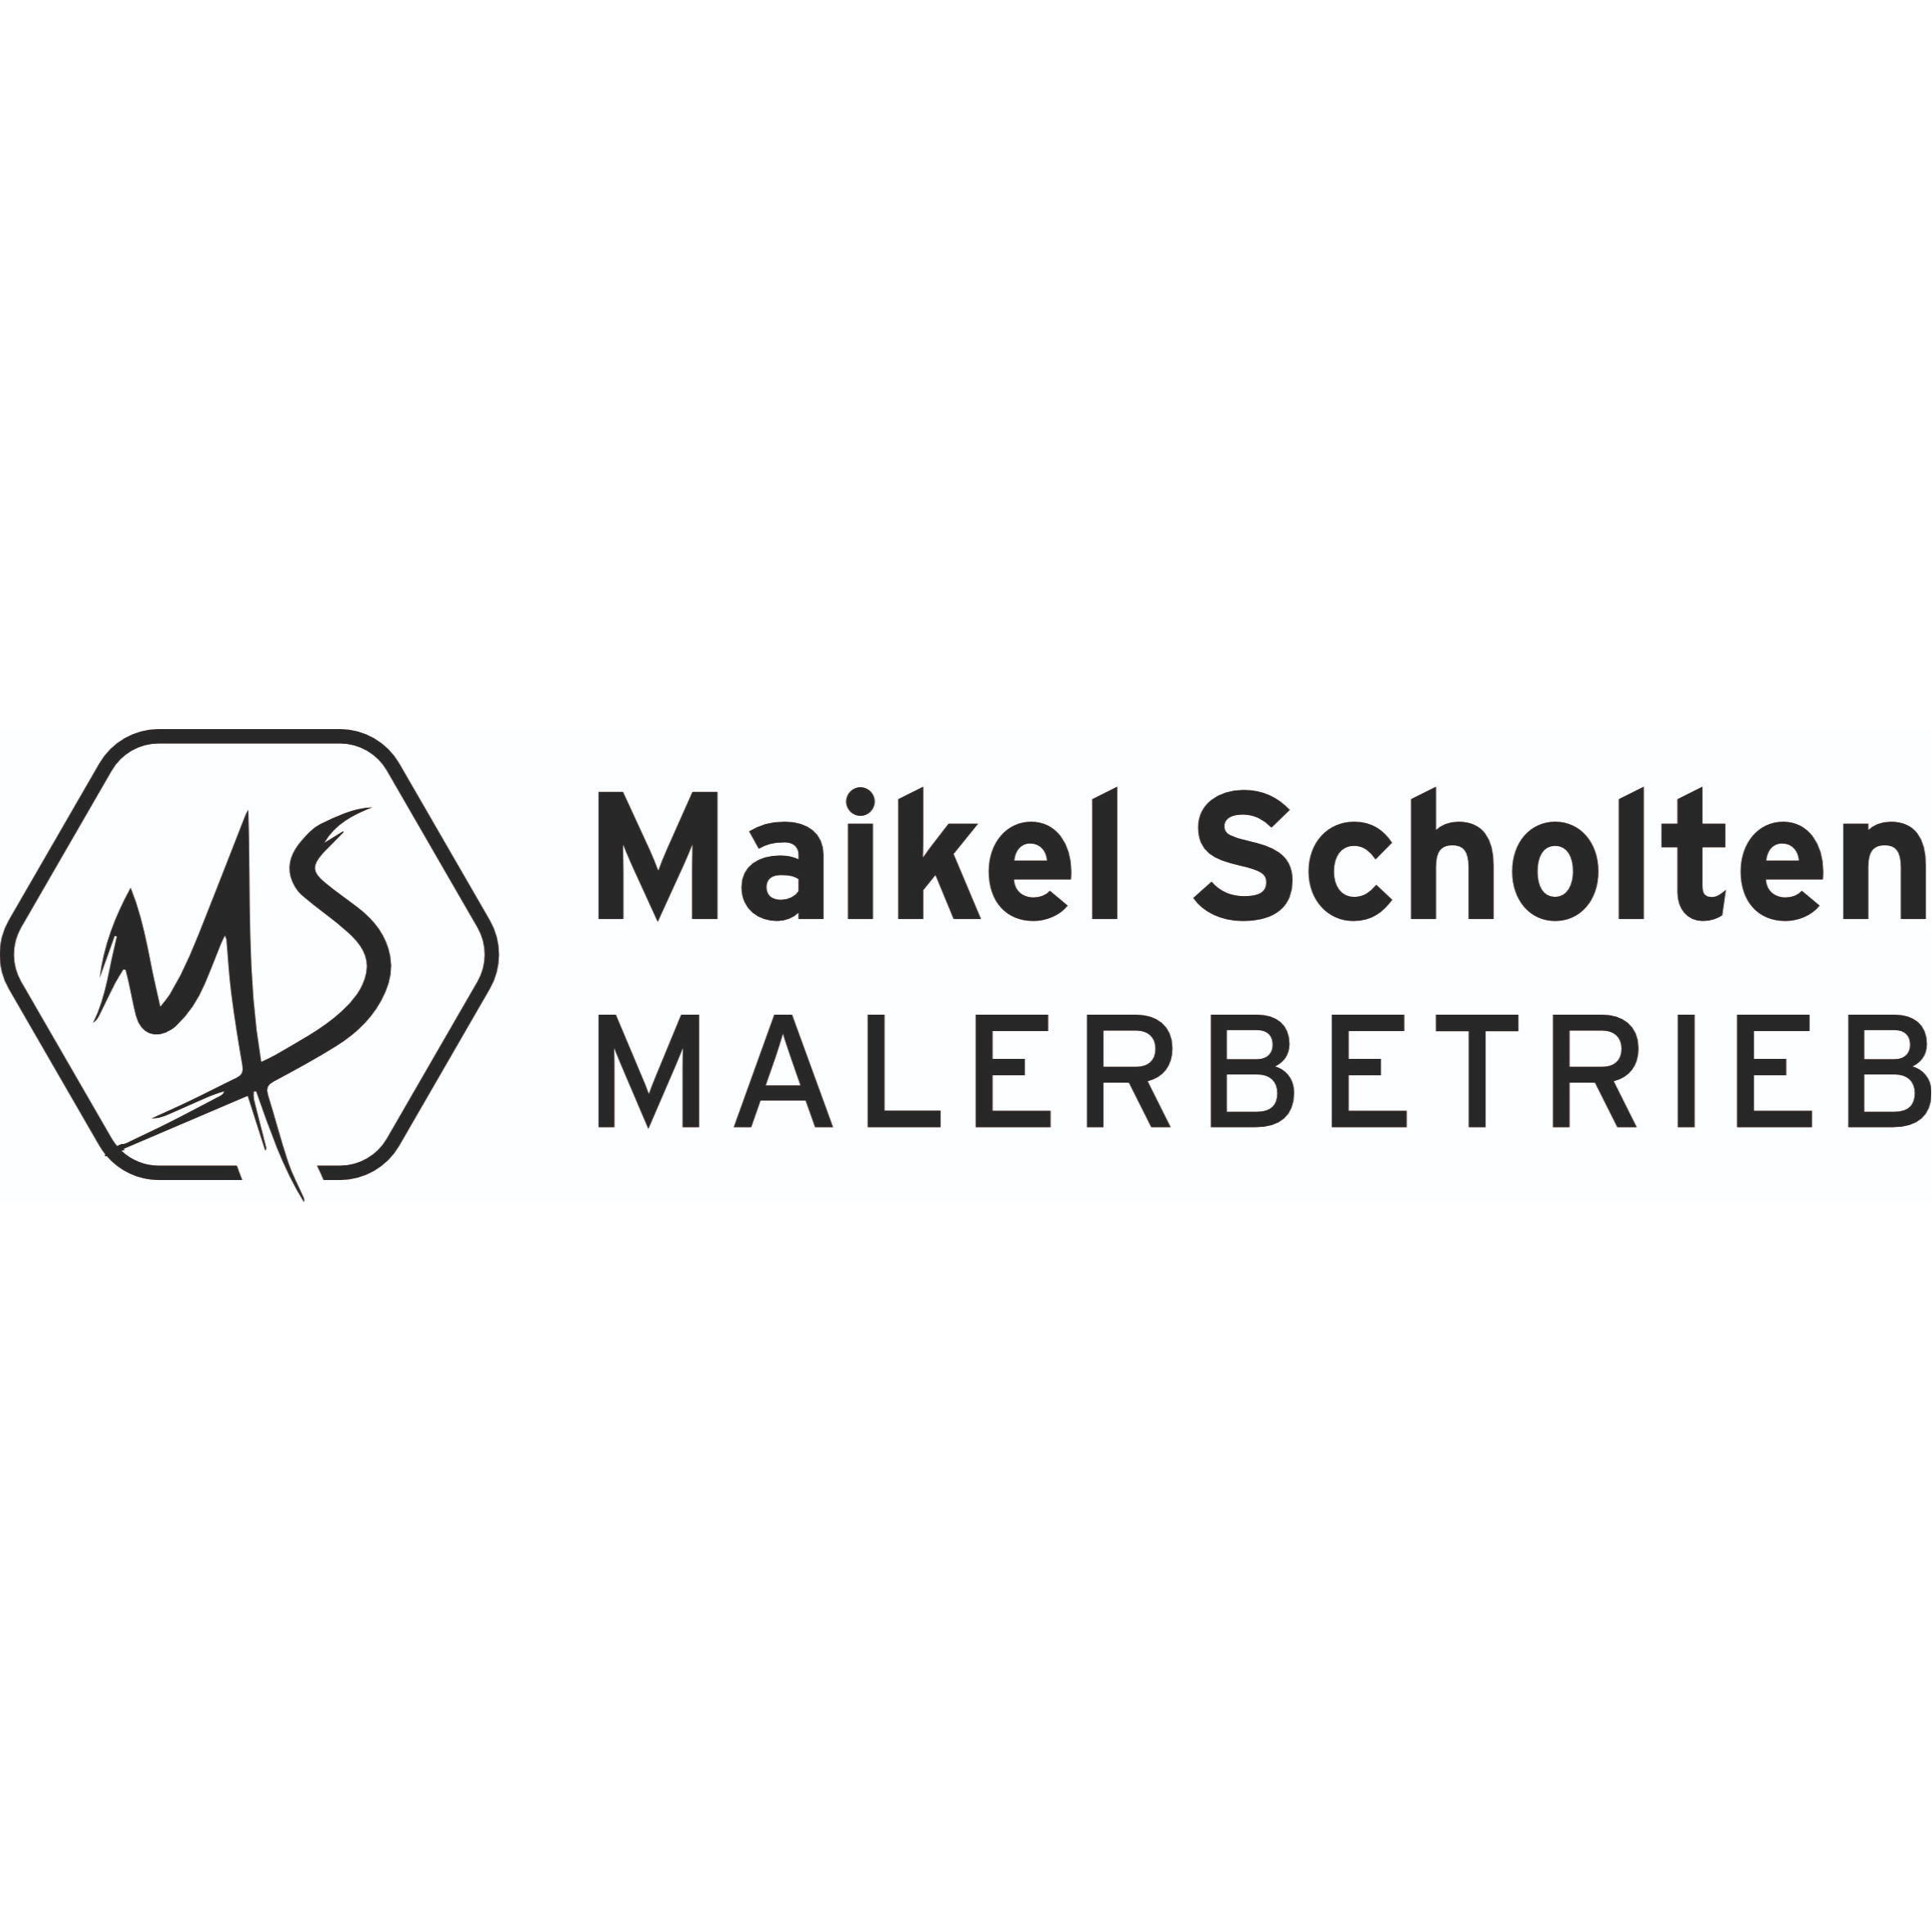 Malerbetrieb Scholten in Kleve am Niederrhein - Logo